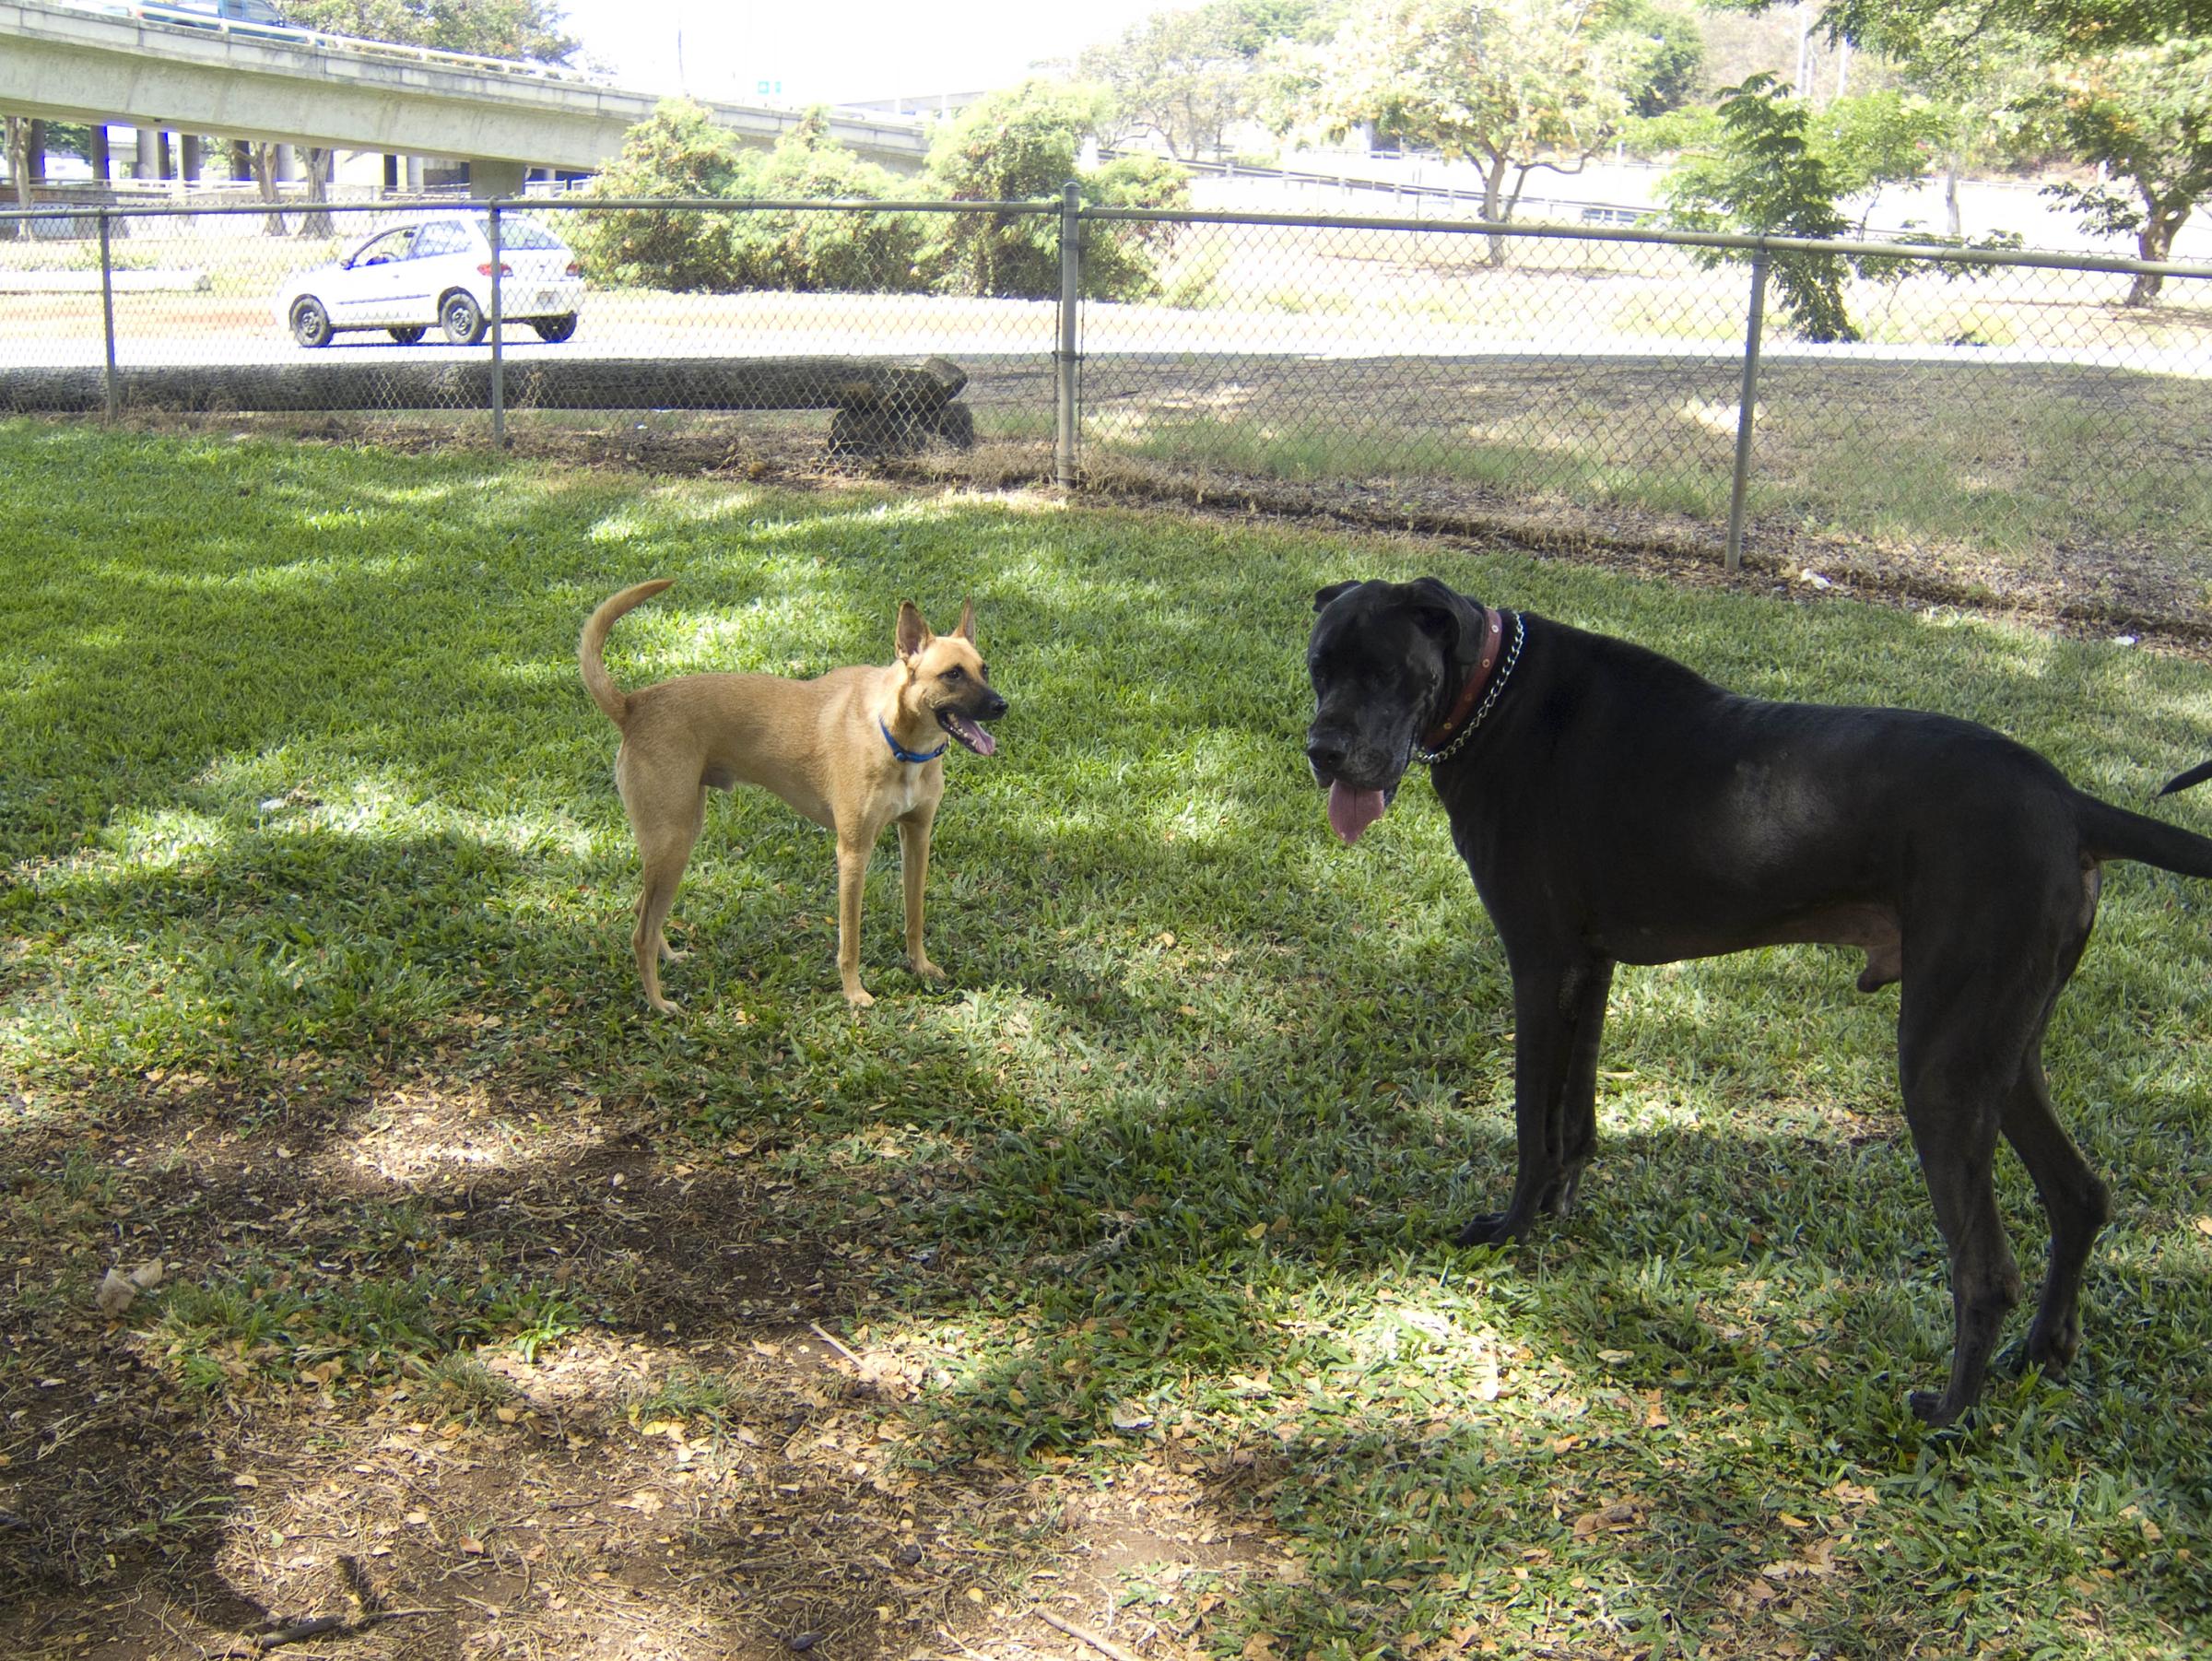 Pet Friendly Dog Park at Moanalua Community Park